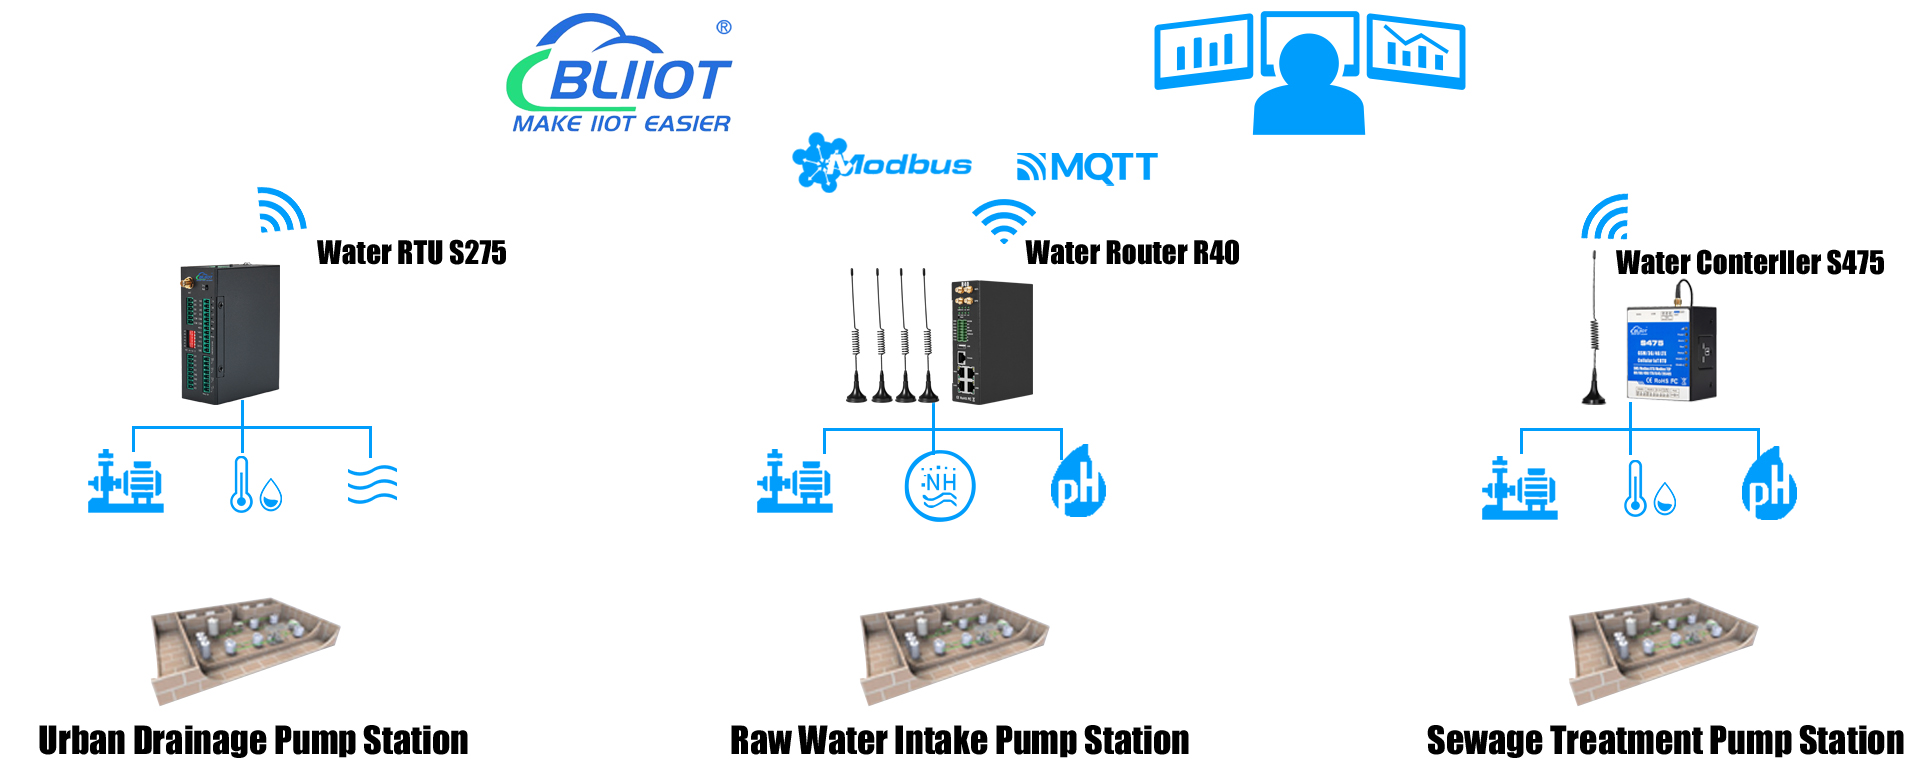 Sistema de control y monitoreo remoto de bombas de agua BLIIoT